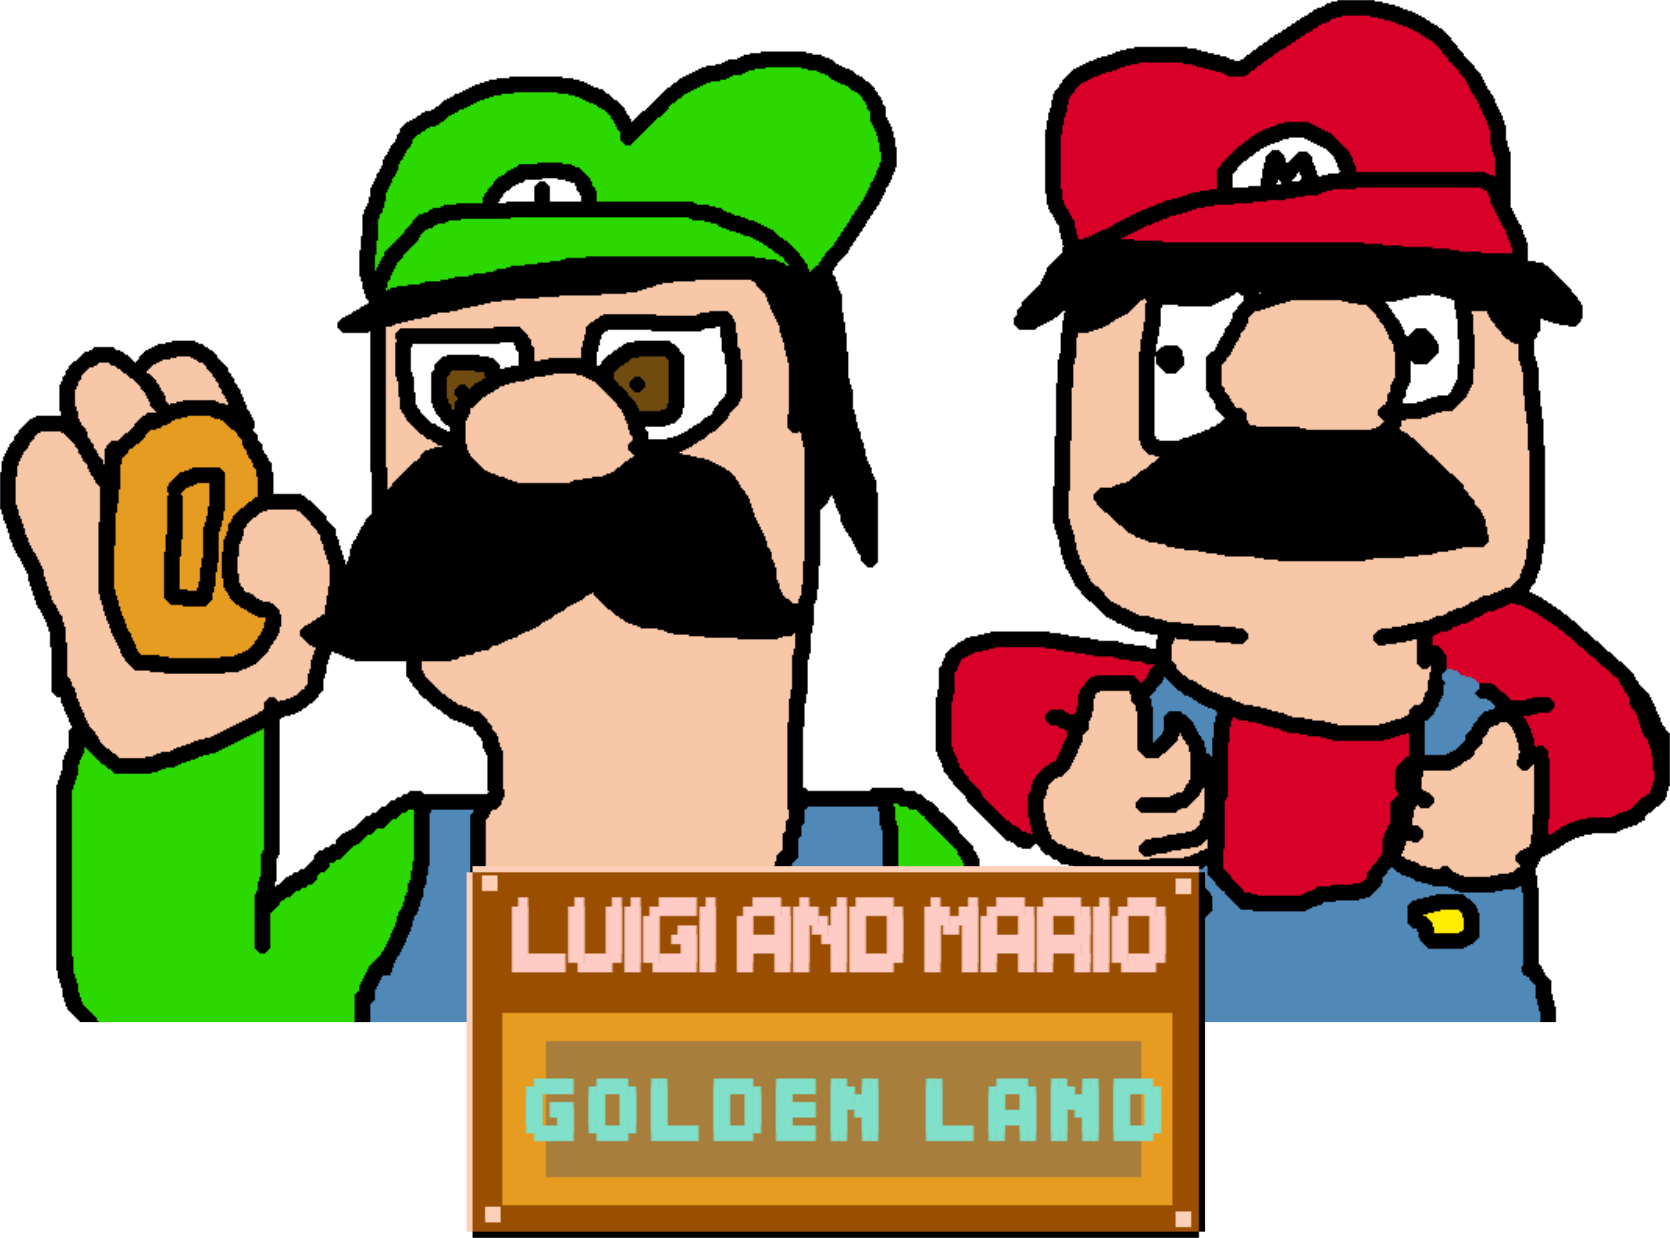 Luigi and Mario Golden Land